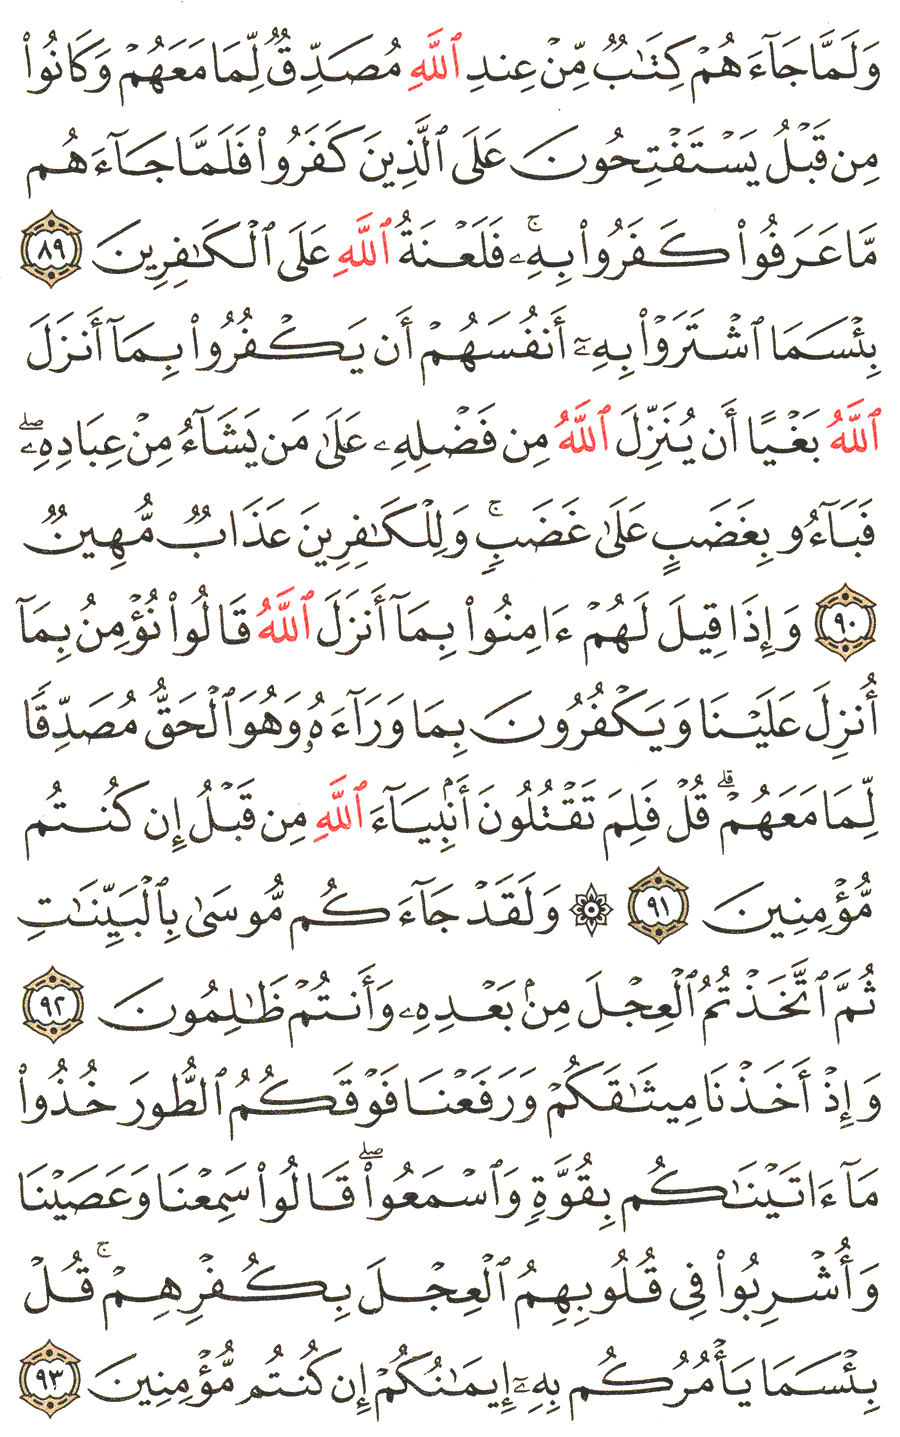 الصفحة رقم  14 من القرآن الكريم مكتوبة من المصحف